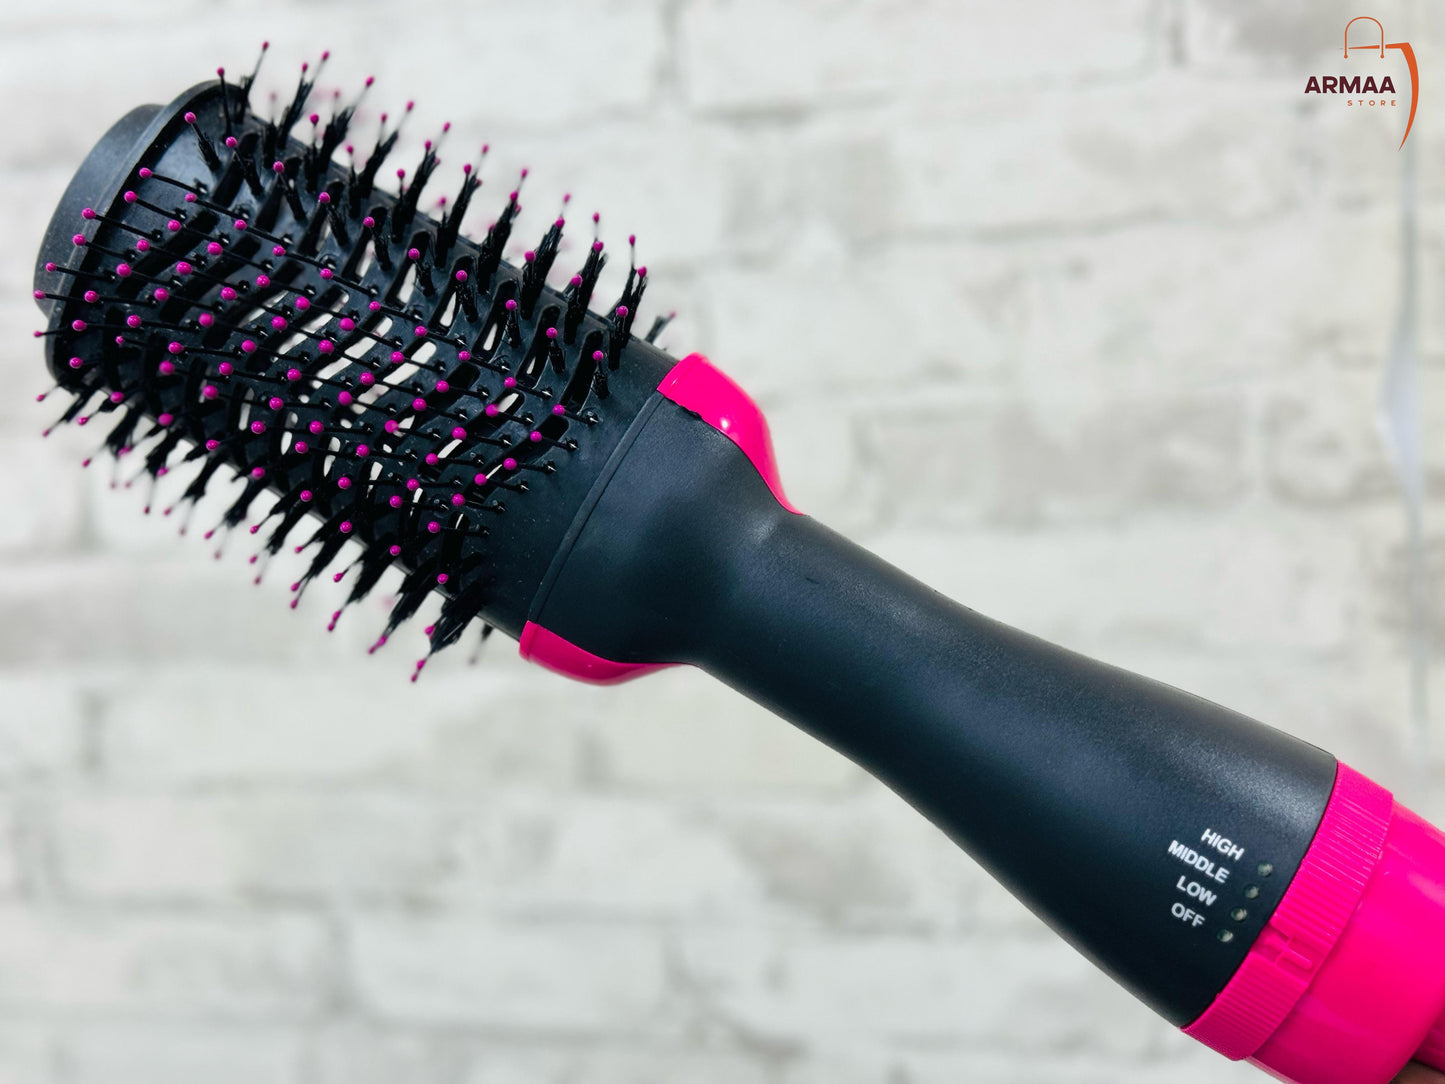 One Step Hair Brush | Professional Hot Air Brush